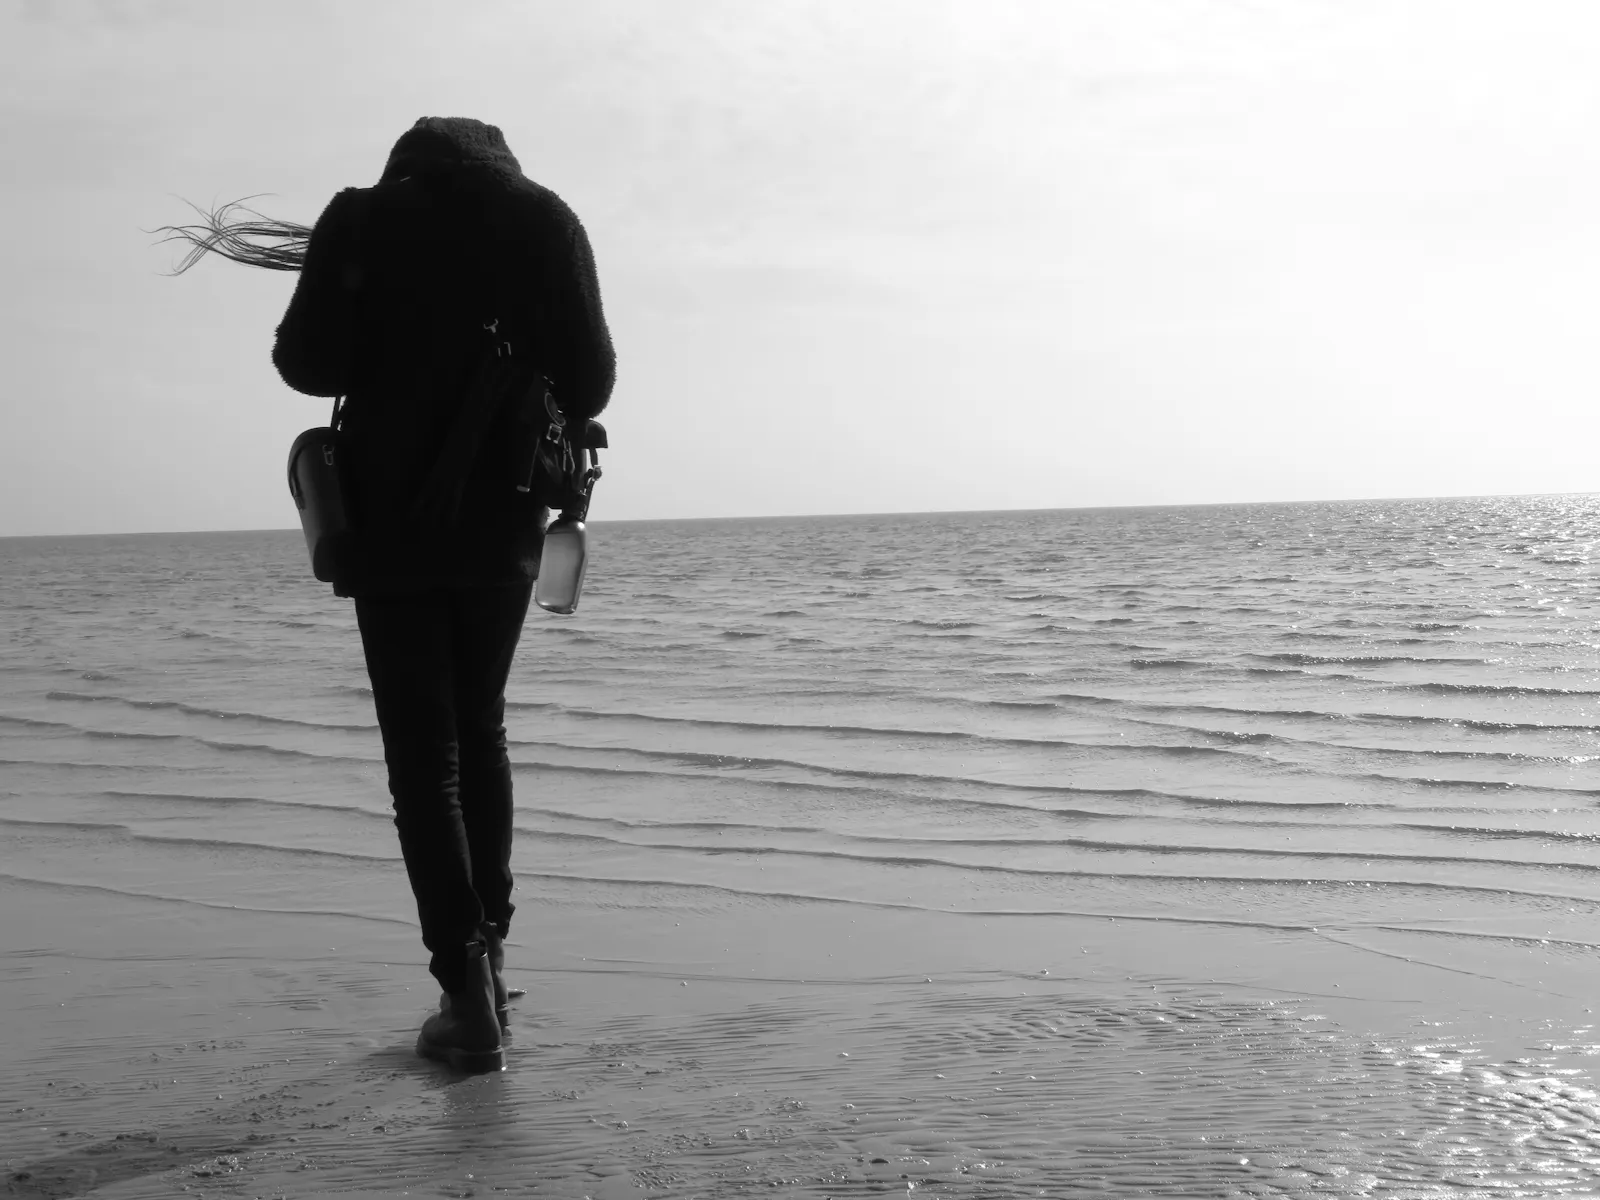 Schwarz-weiße Fotografie. Eine schlanke Person steht am Meeresufer.